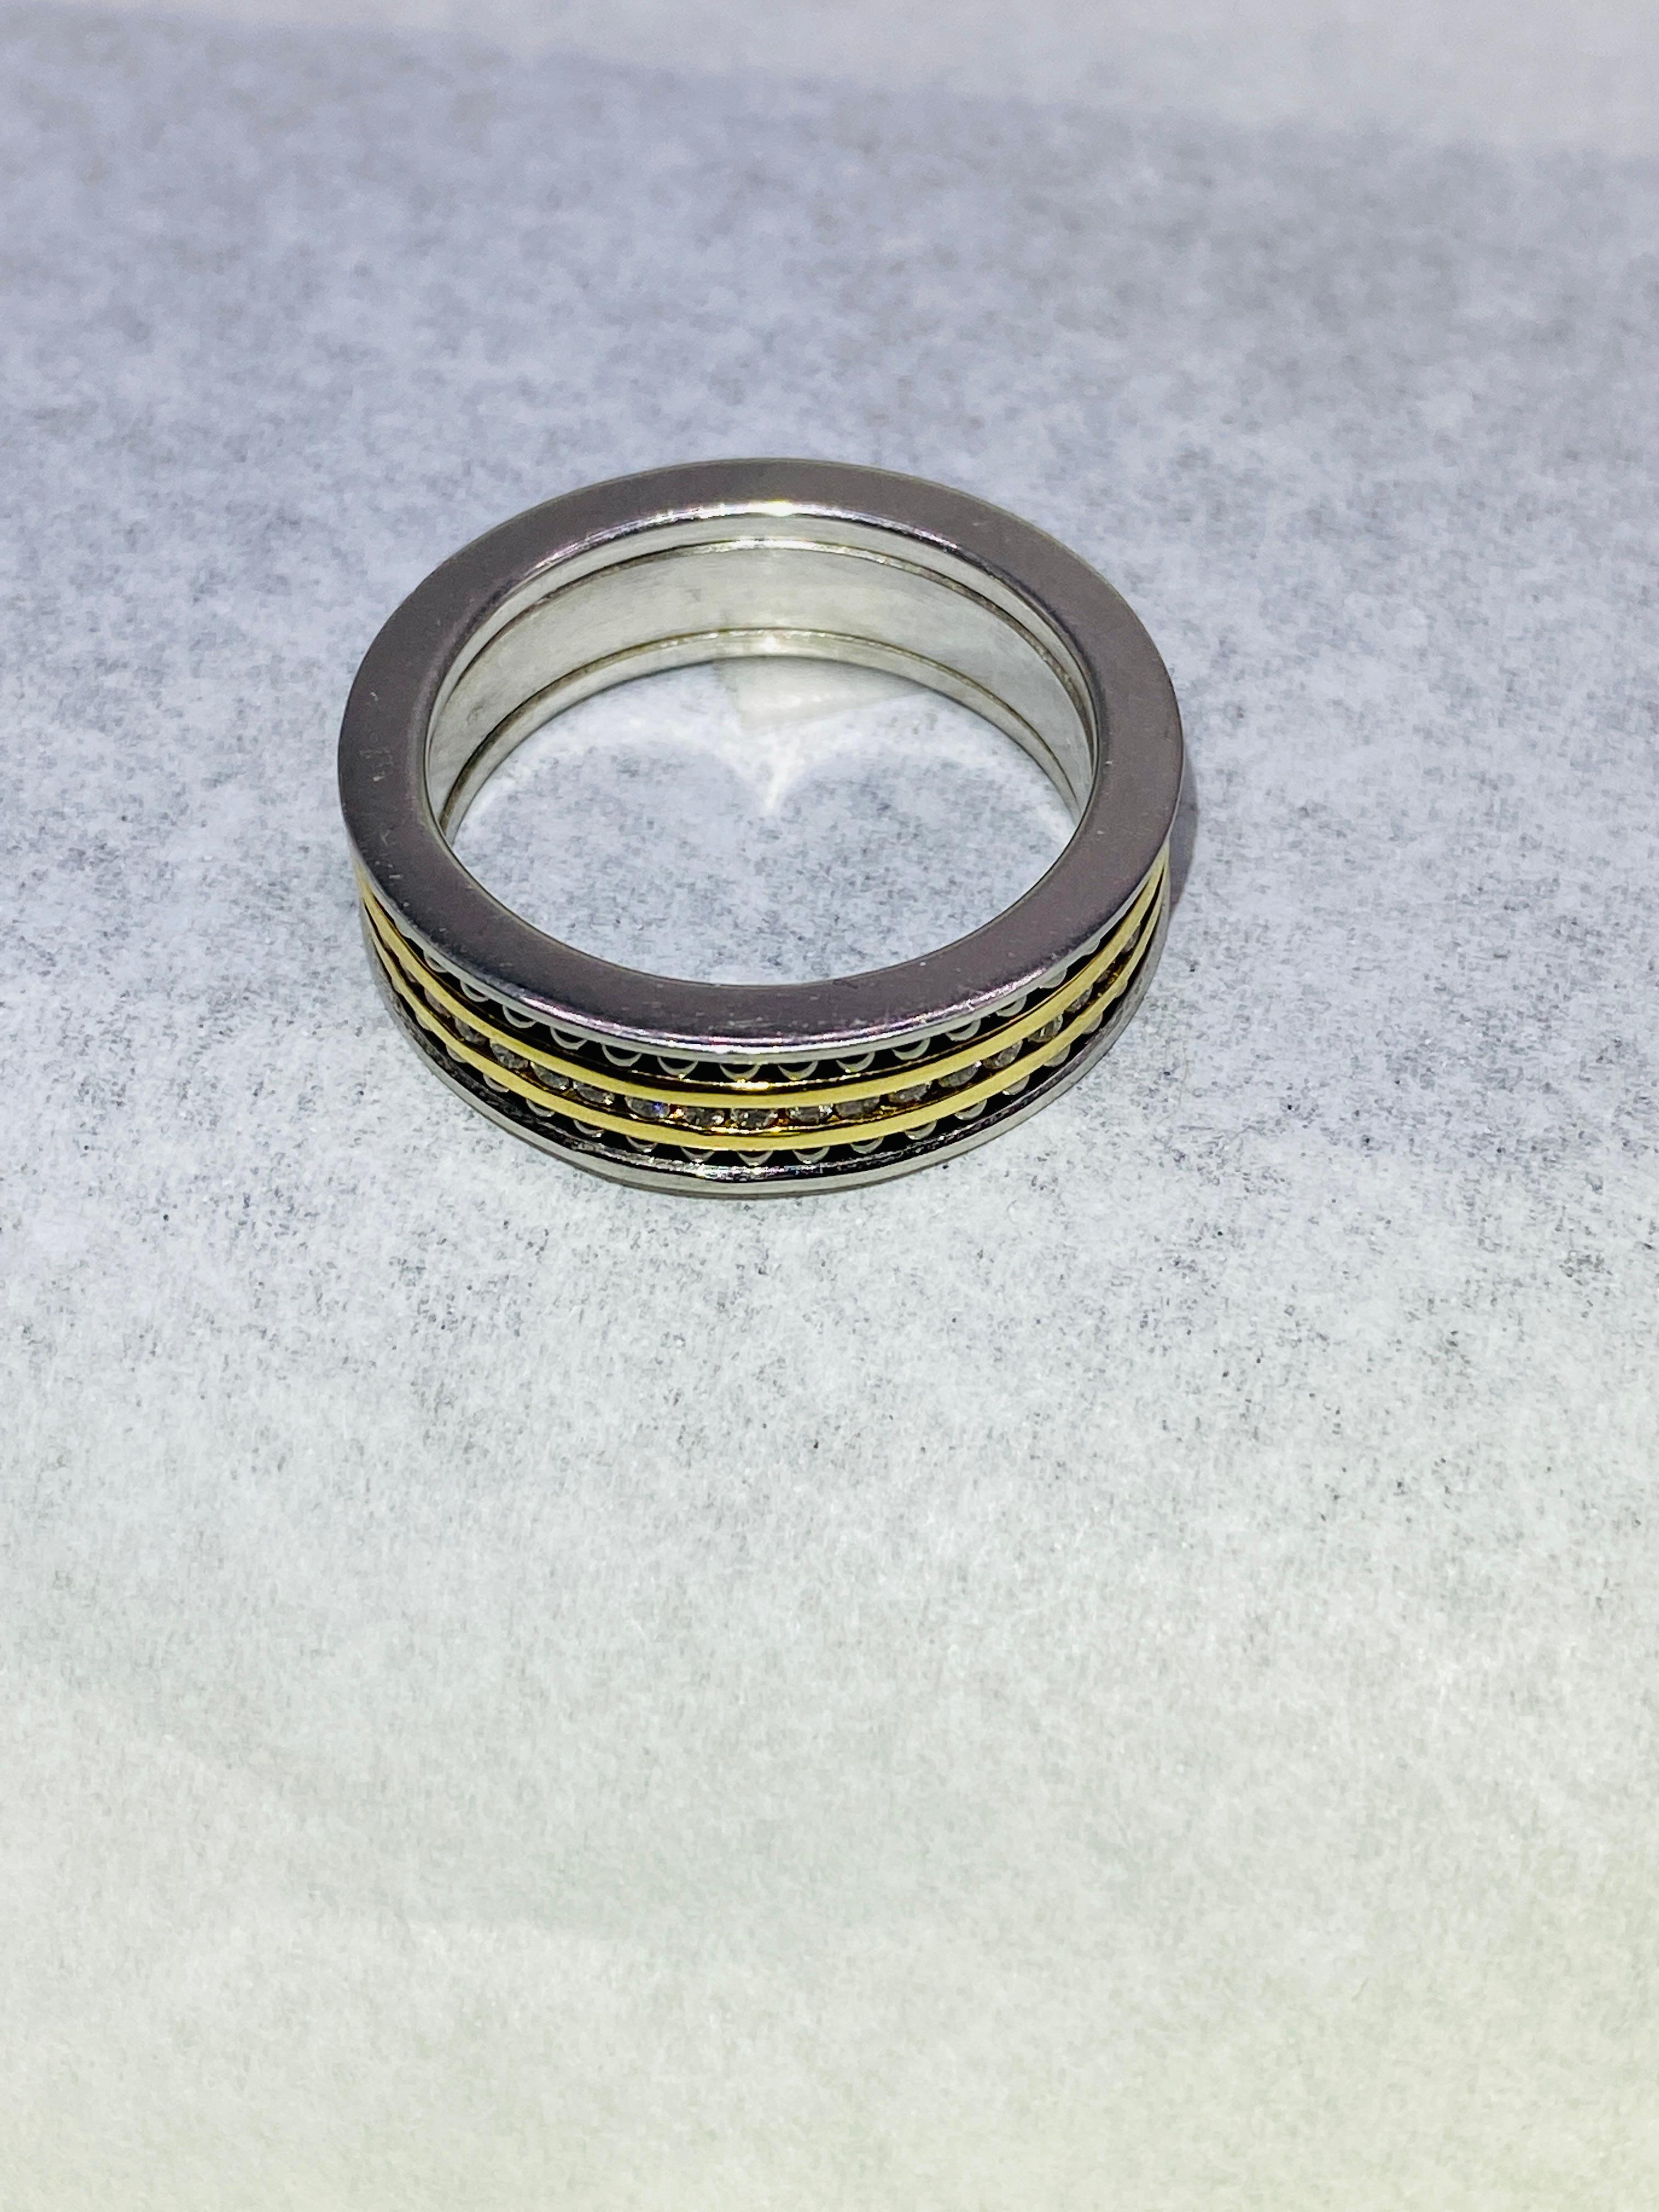 ball bearing wedding ring